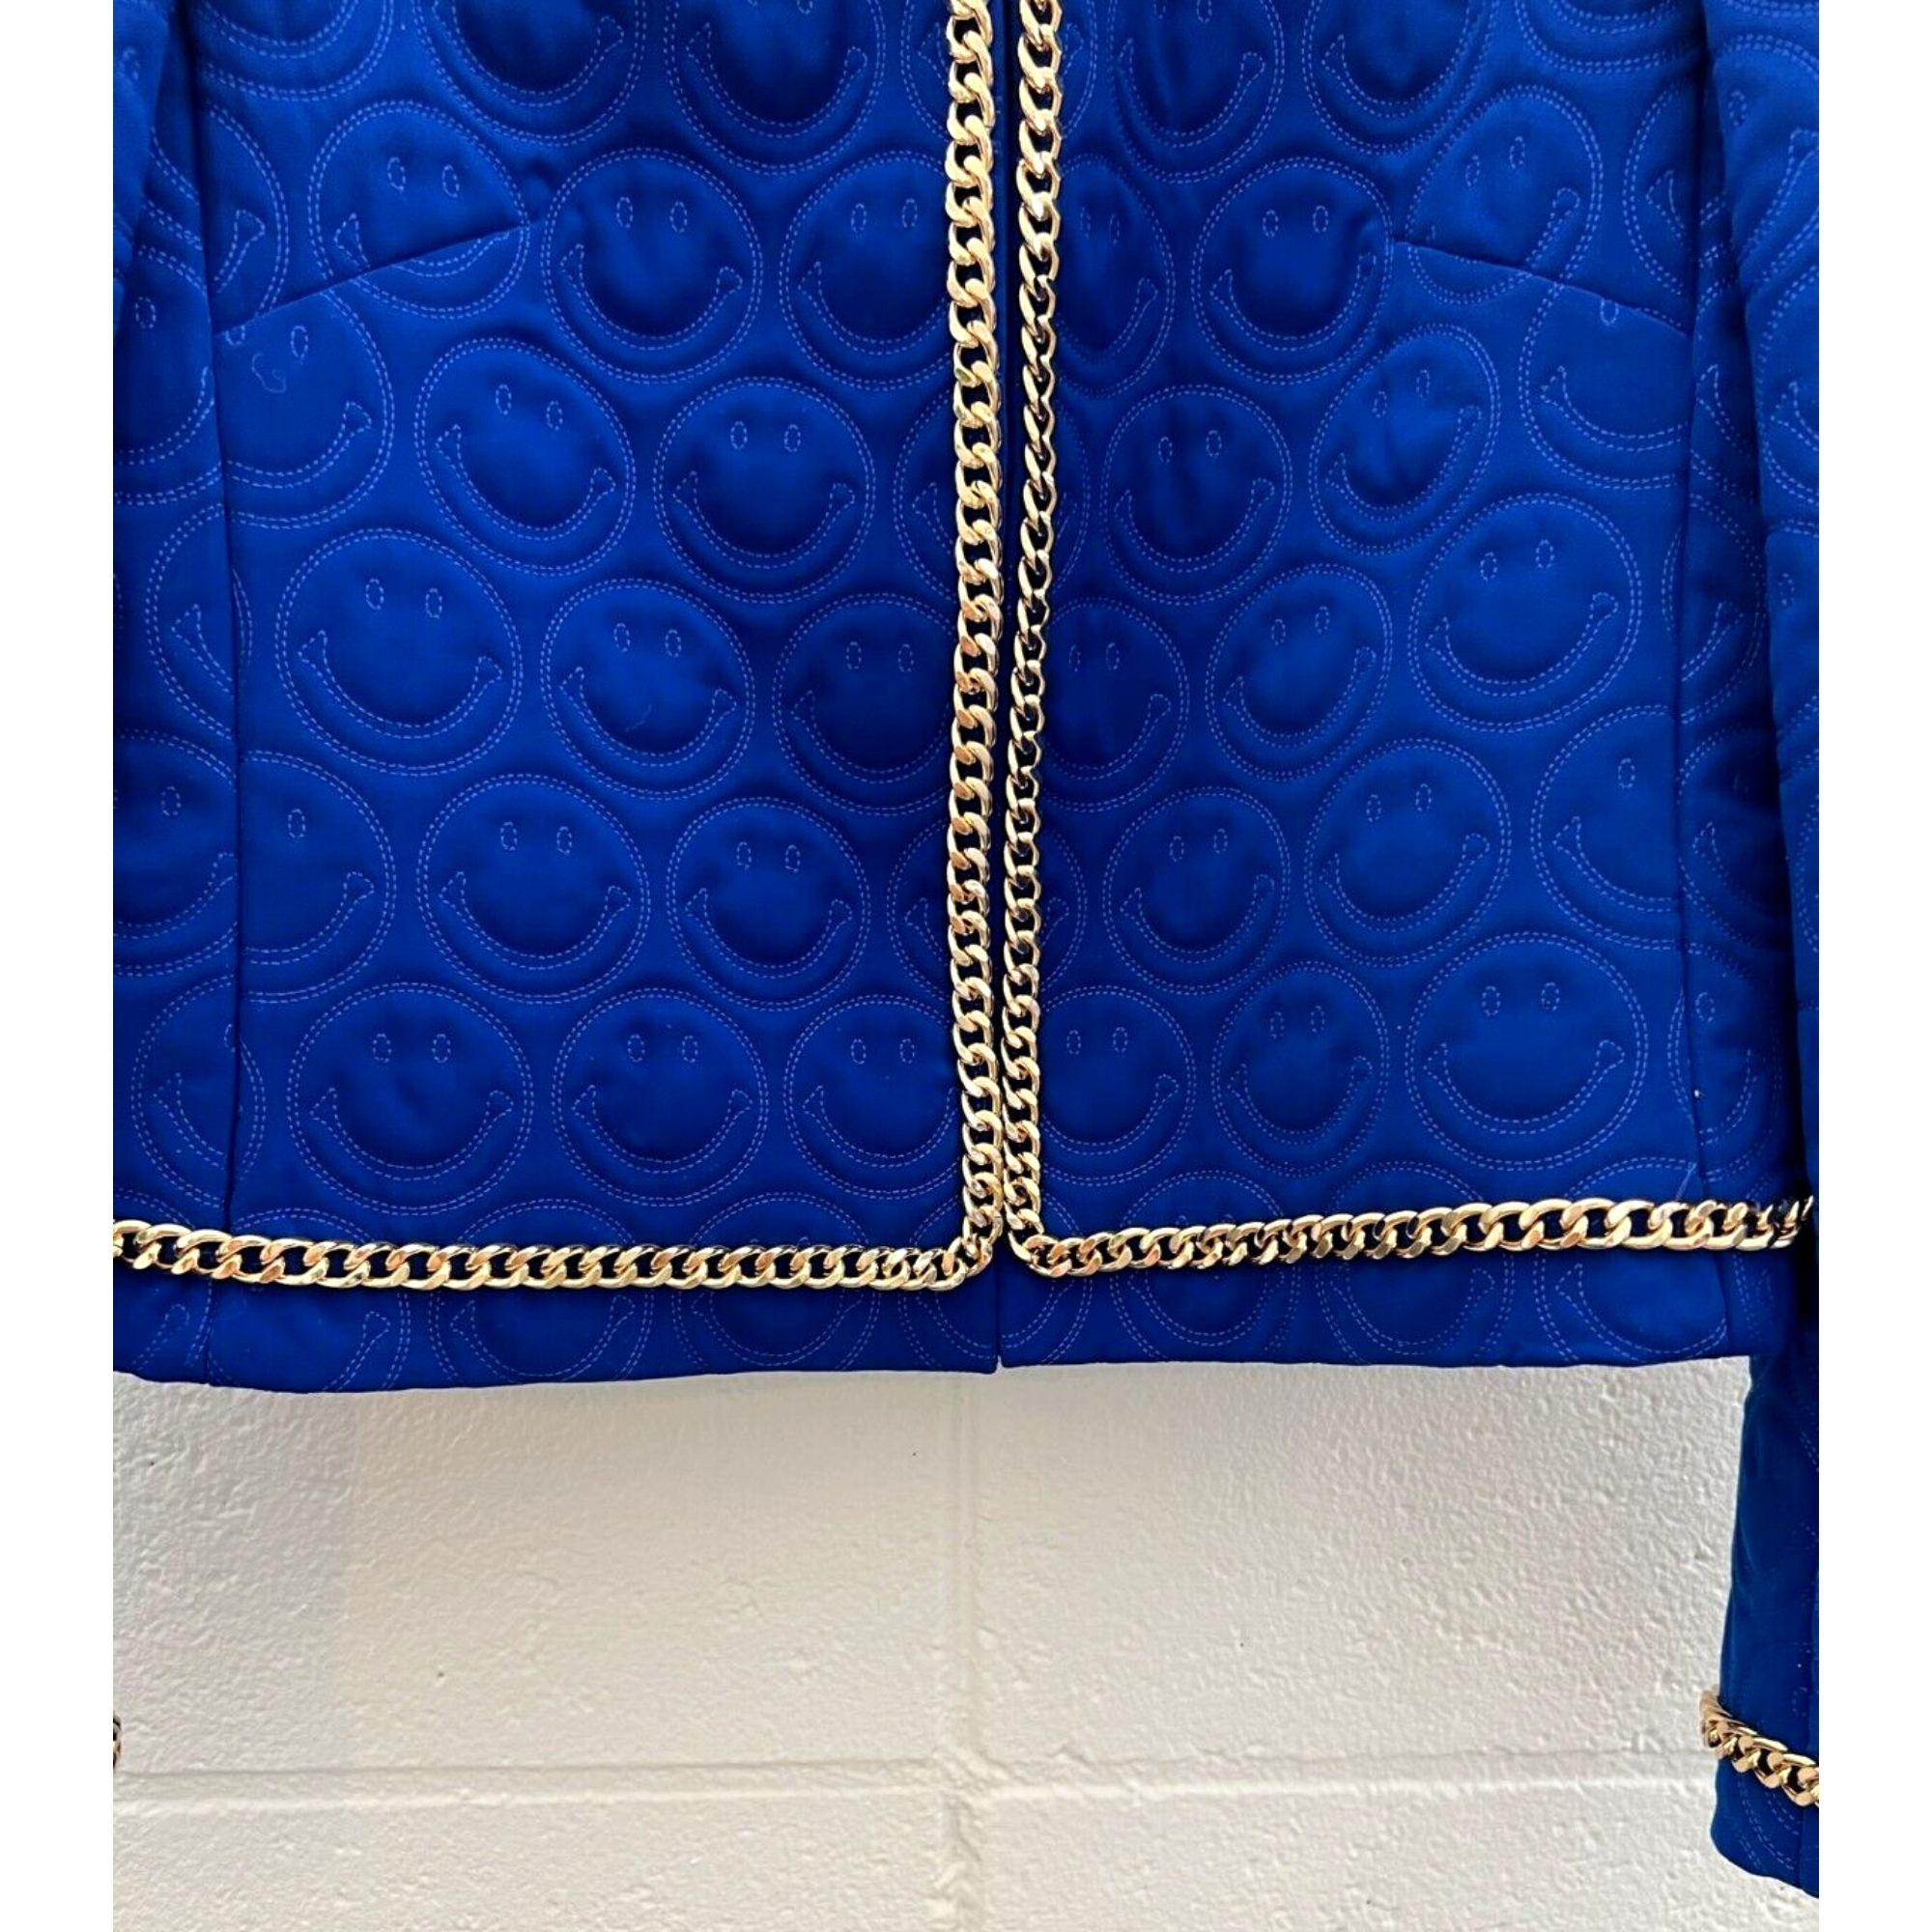 SS21 Moschino Couture Blauer Blazer mit smiley Face von Jeremy Scott, Größe US 10 (Violett) im Angebot